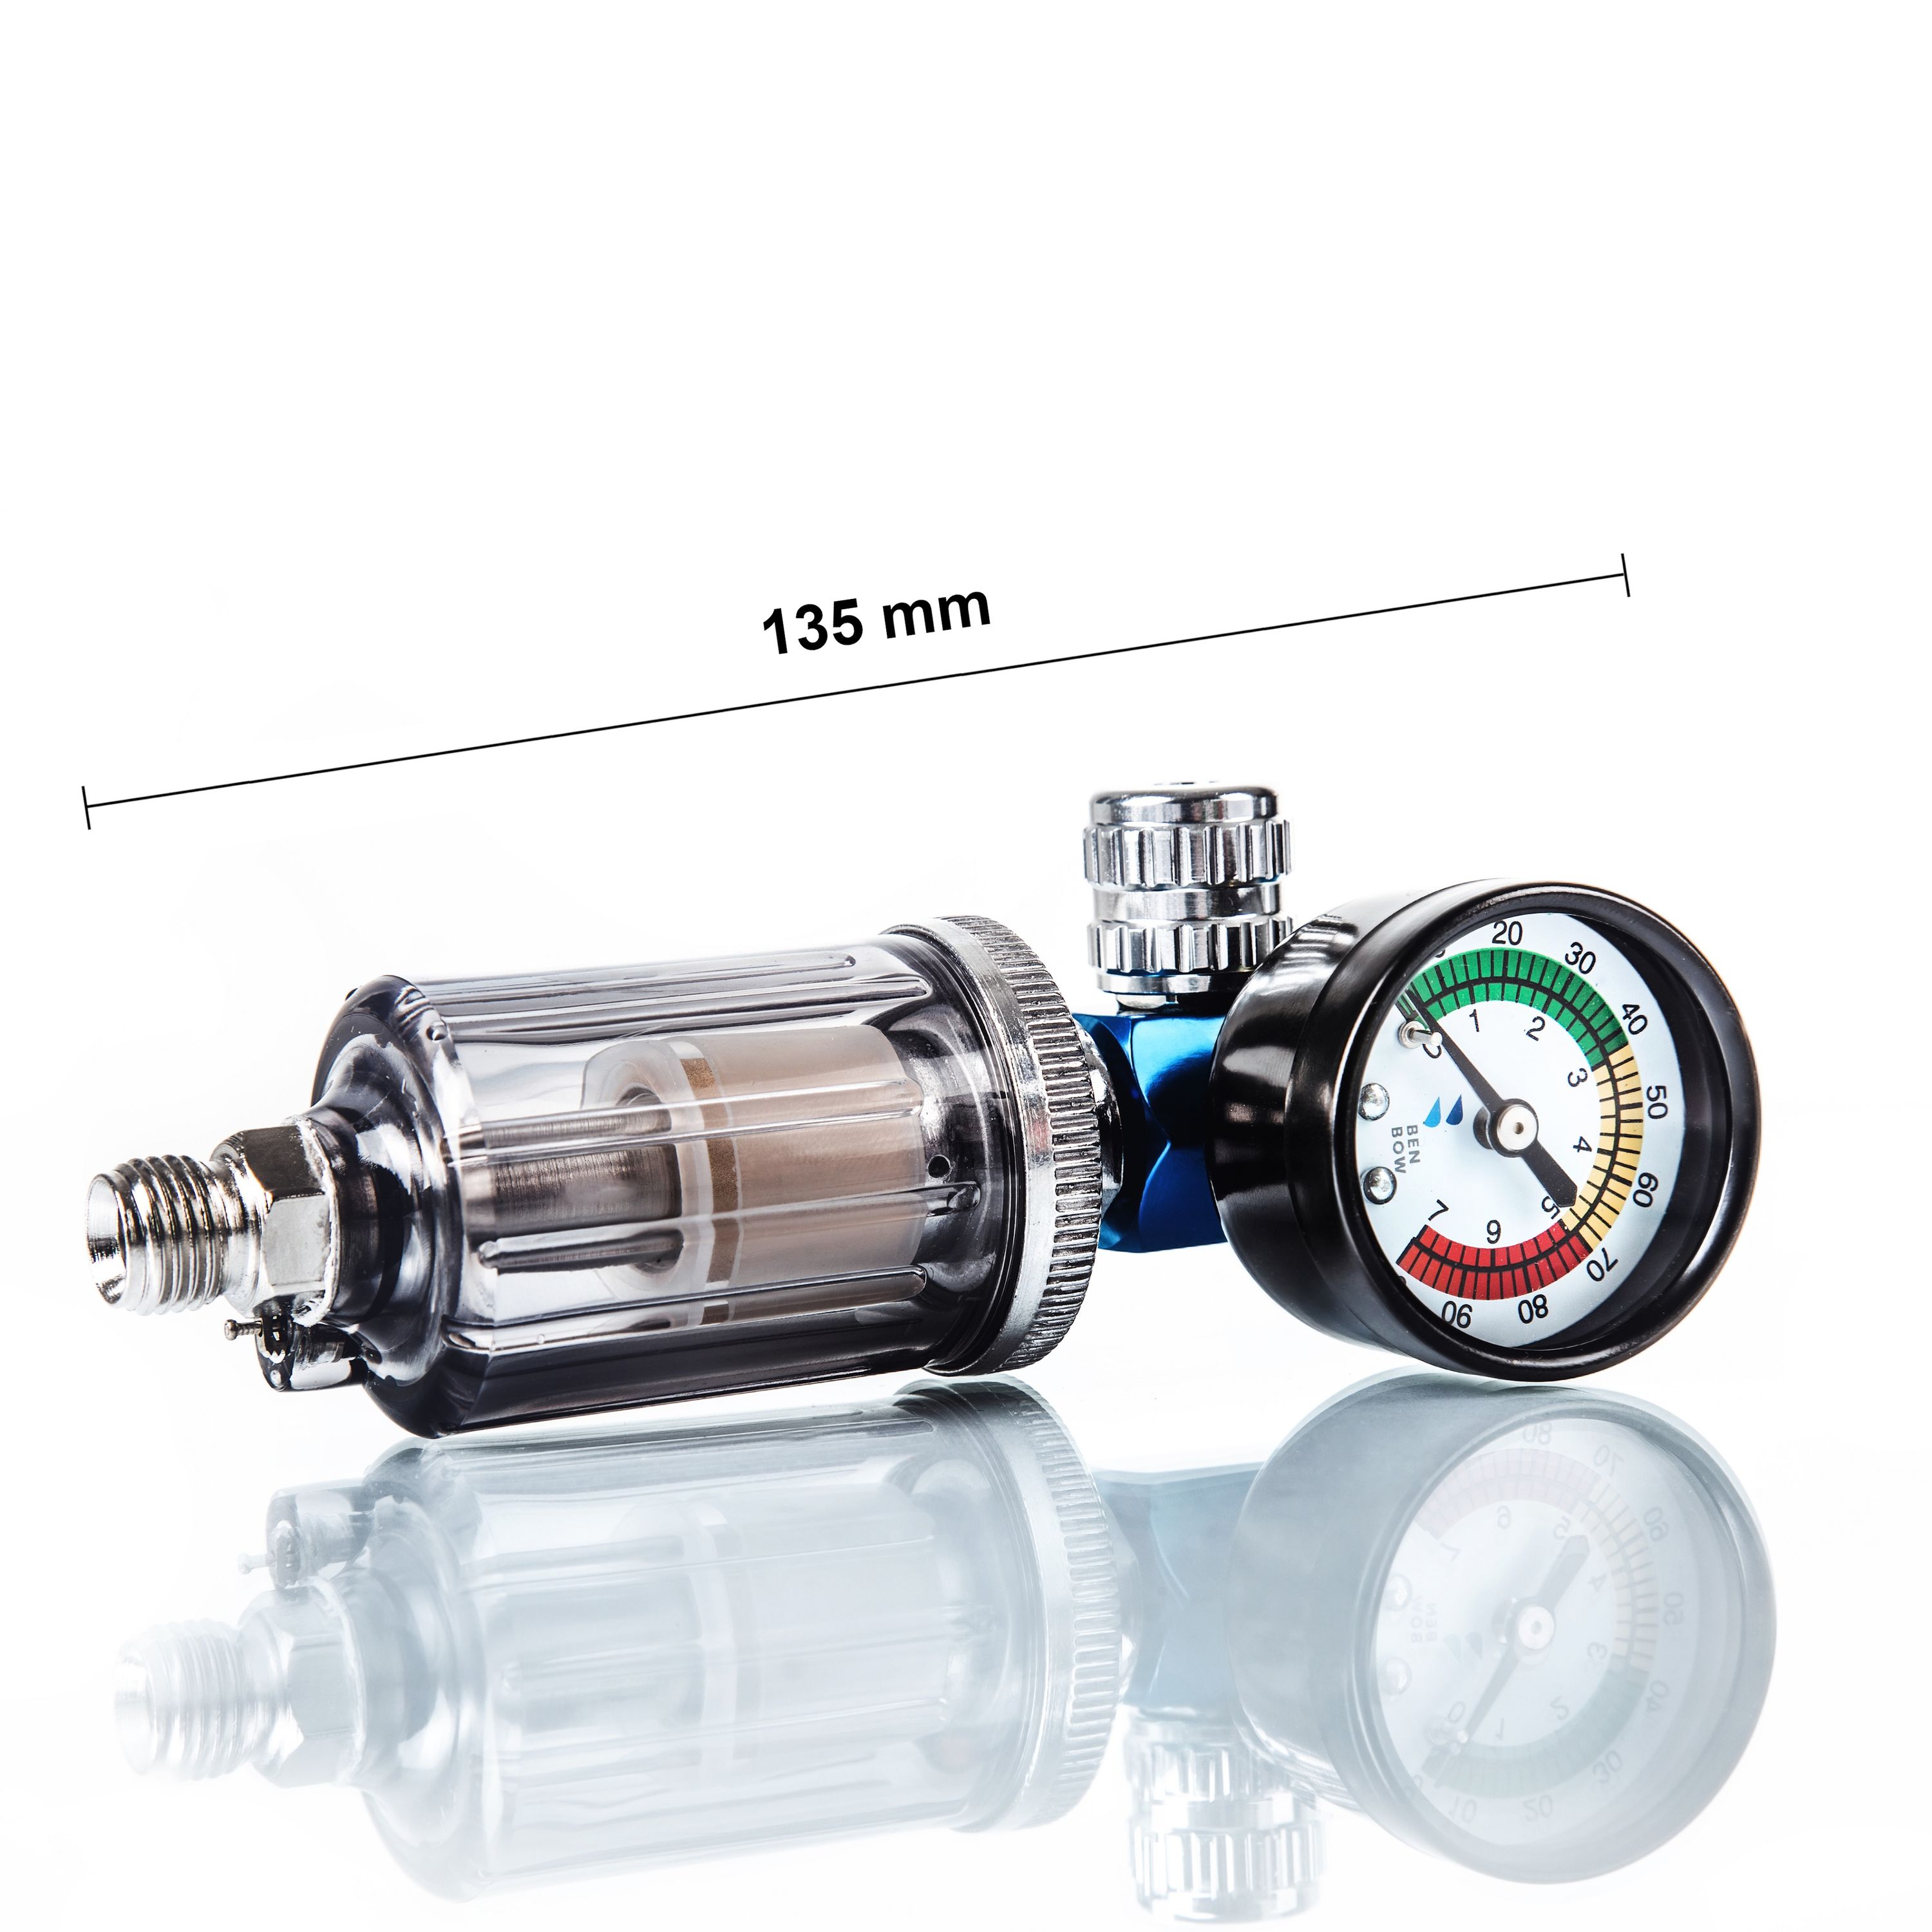 BENBOW 602 Luftdruckregler mit Manometer und Öl-Wasser-Abscheider Filter  für Lackierpistolen Pneumatische Spritzpistole Messgerät Druckminderer